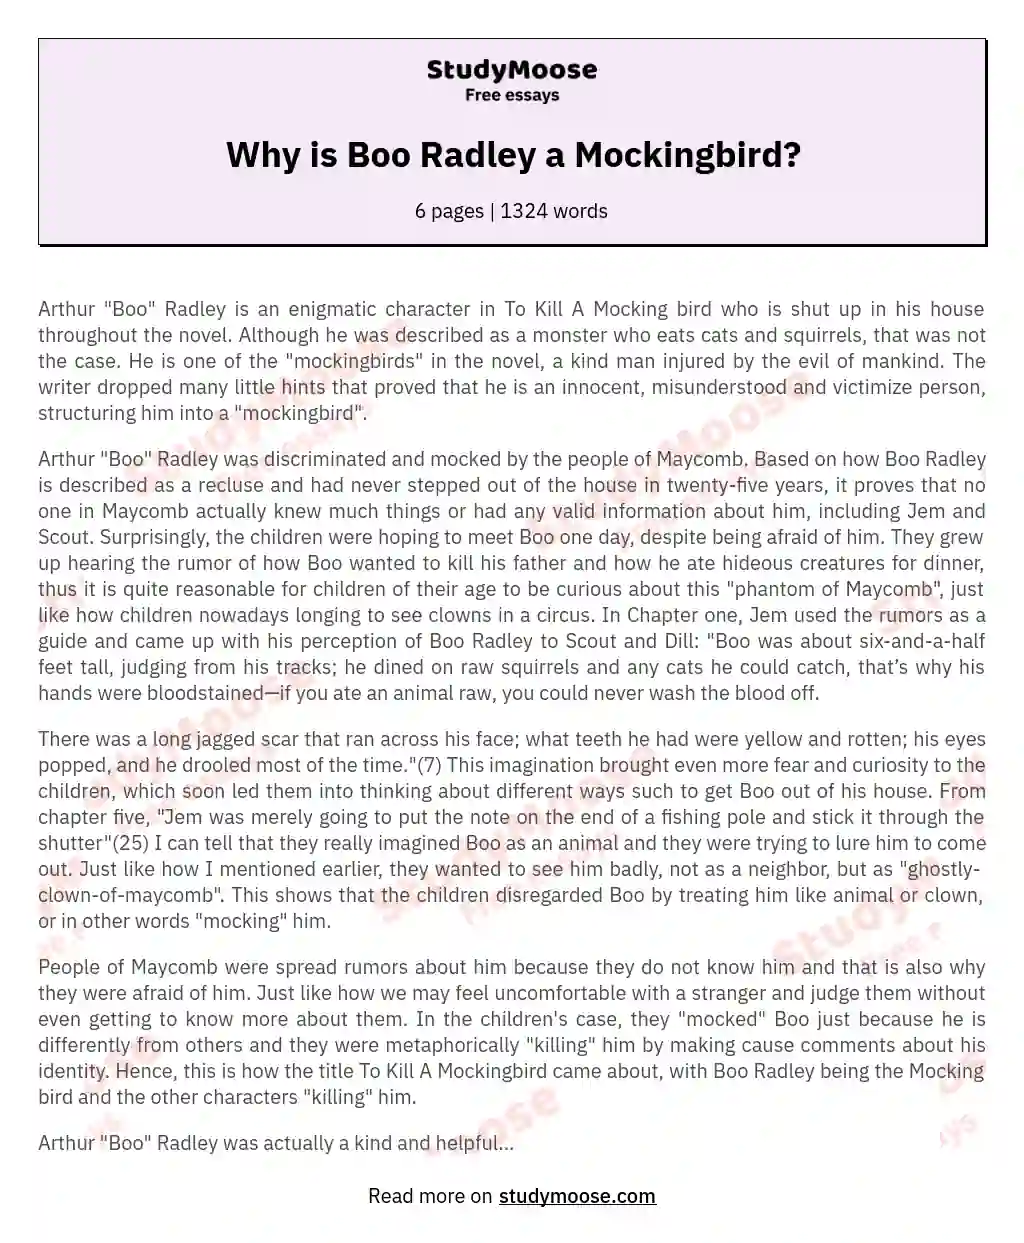 Why is Boo Radley a Mockingbird? essay